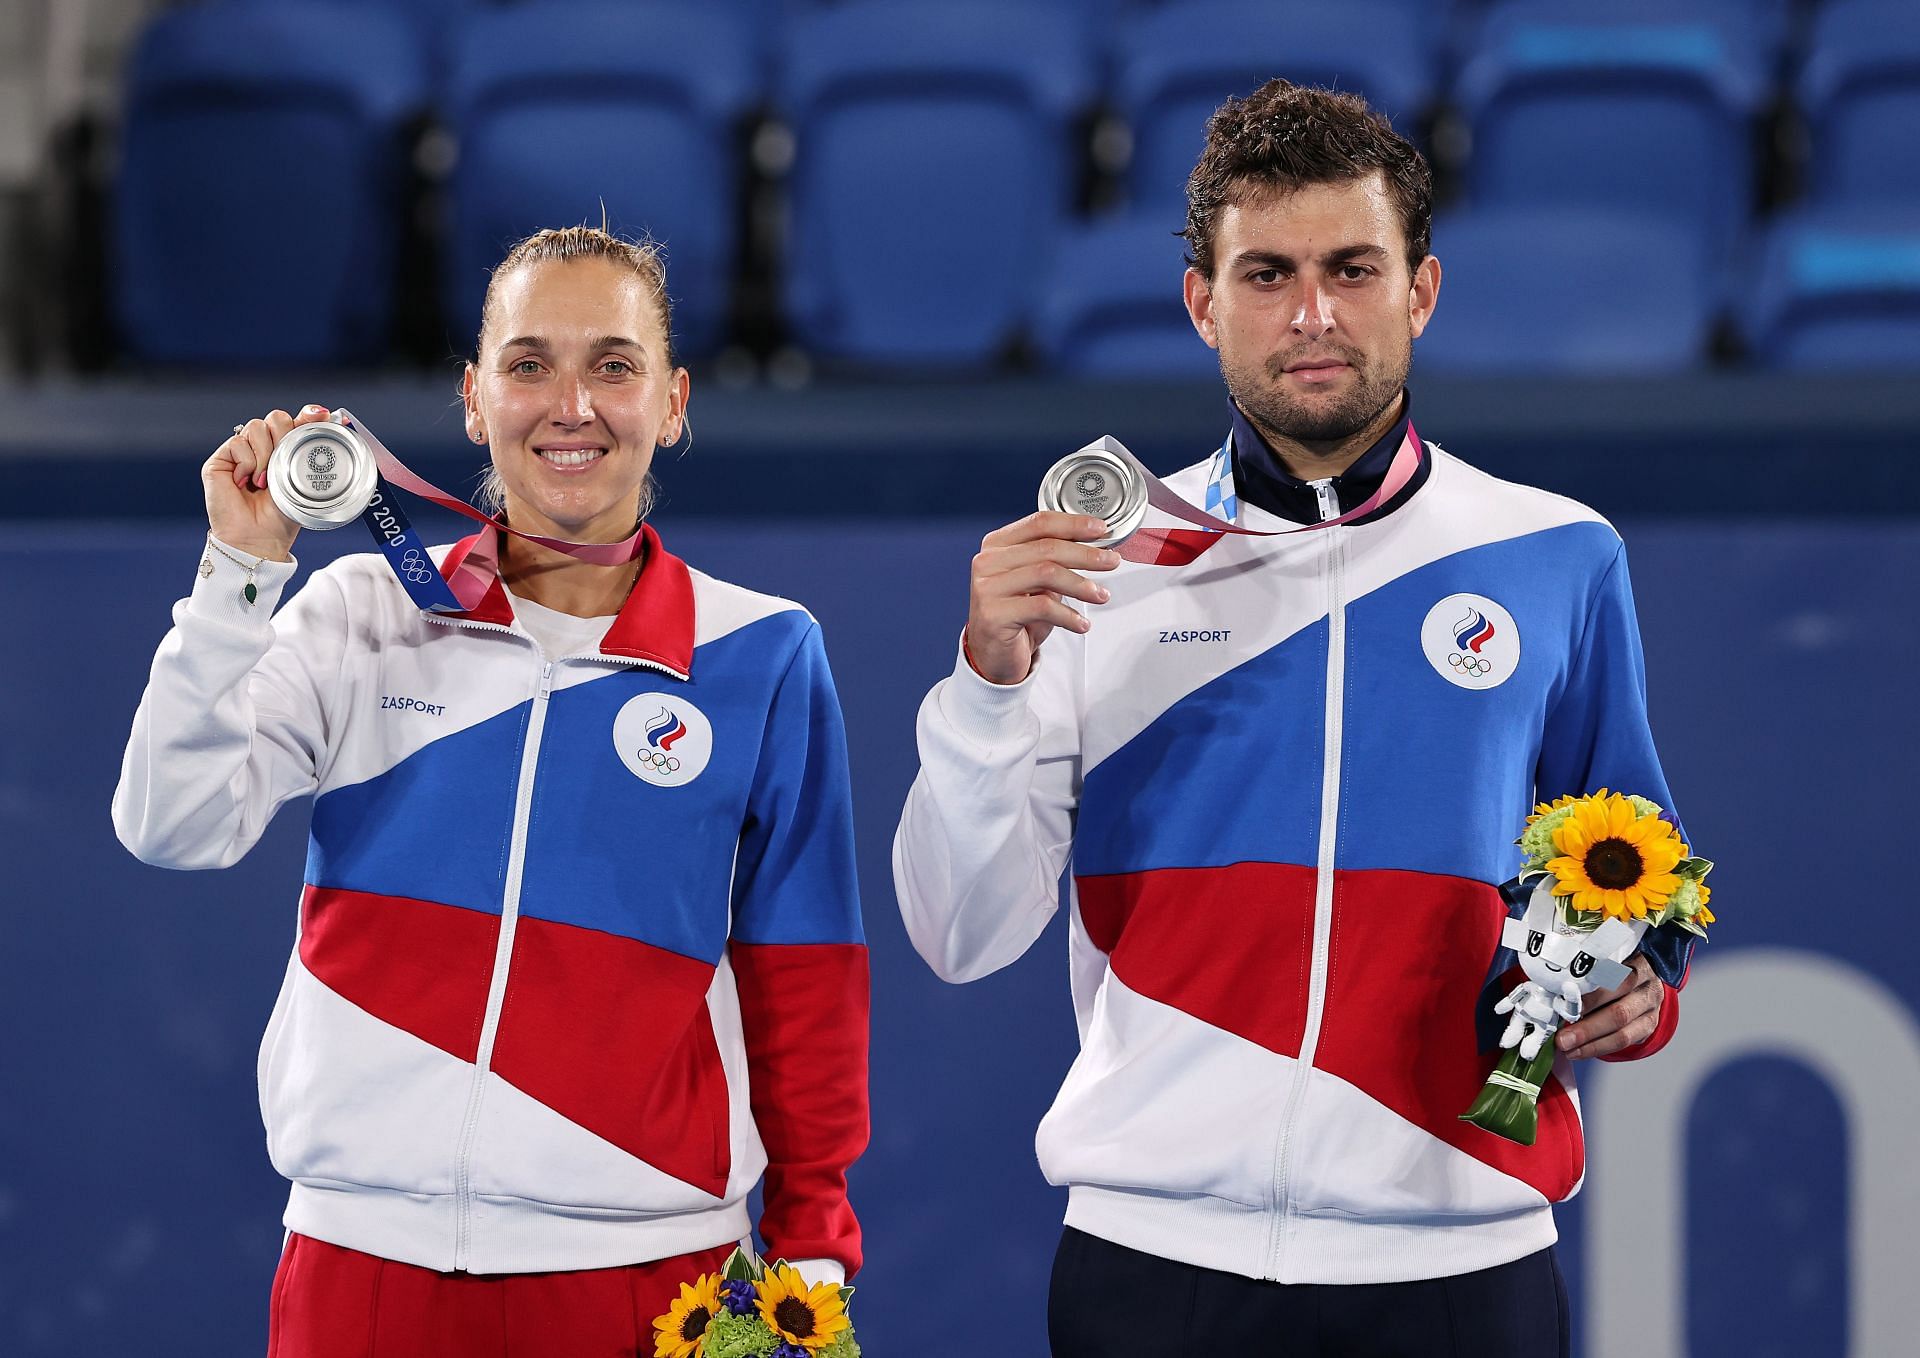 Elena Vesnina and Aslan Karatsev at the Tokyo Olympics 2020